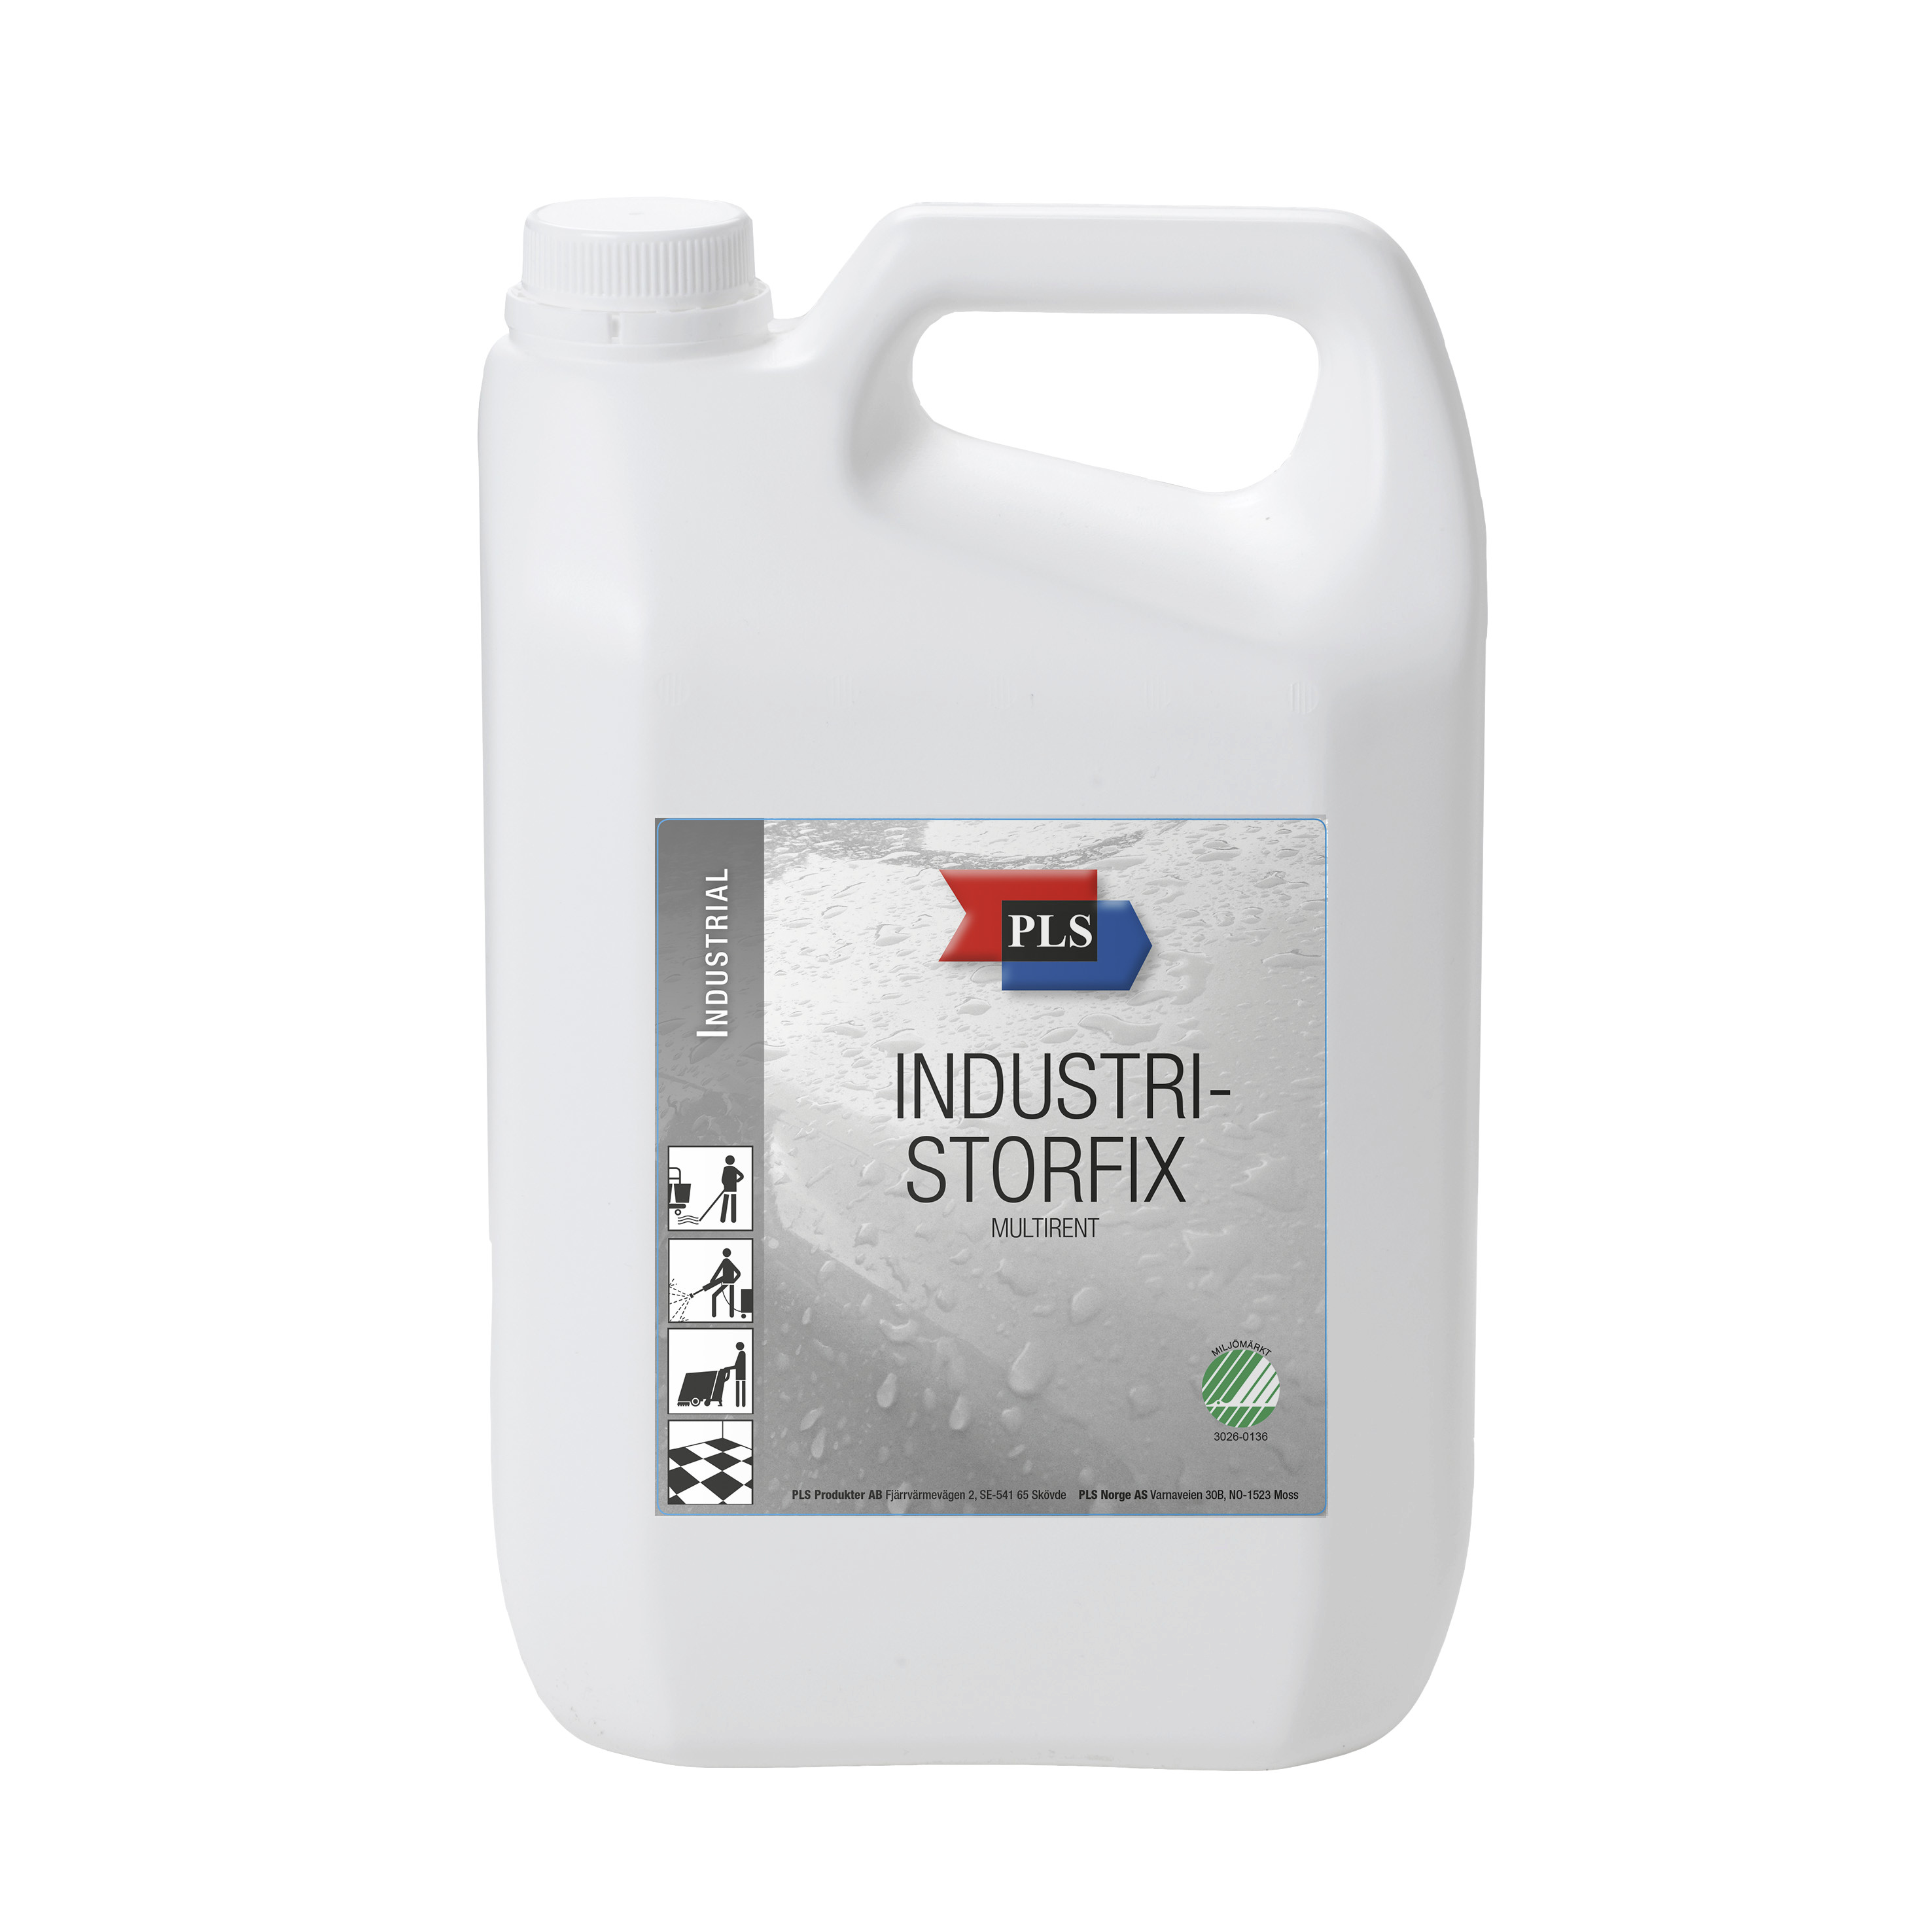 PLS Industri - Storfix 5L